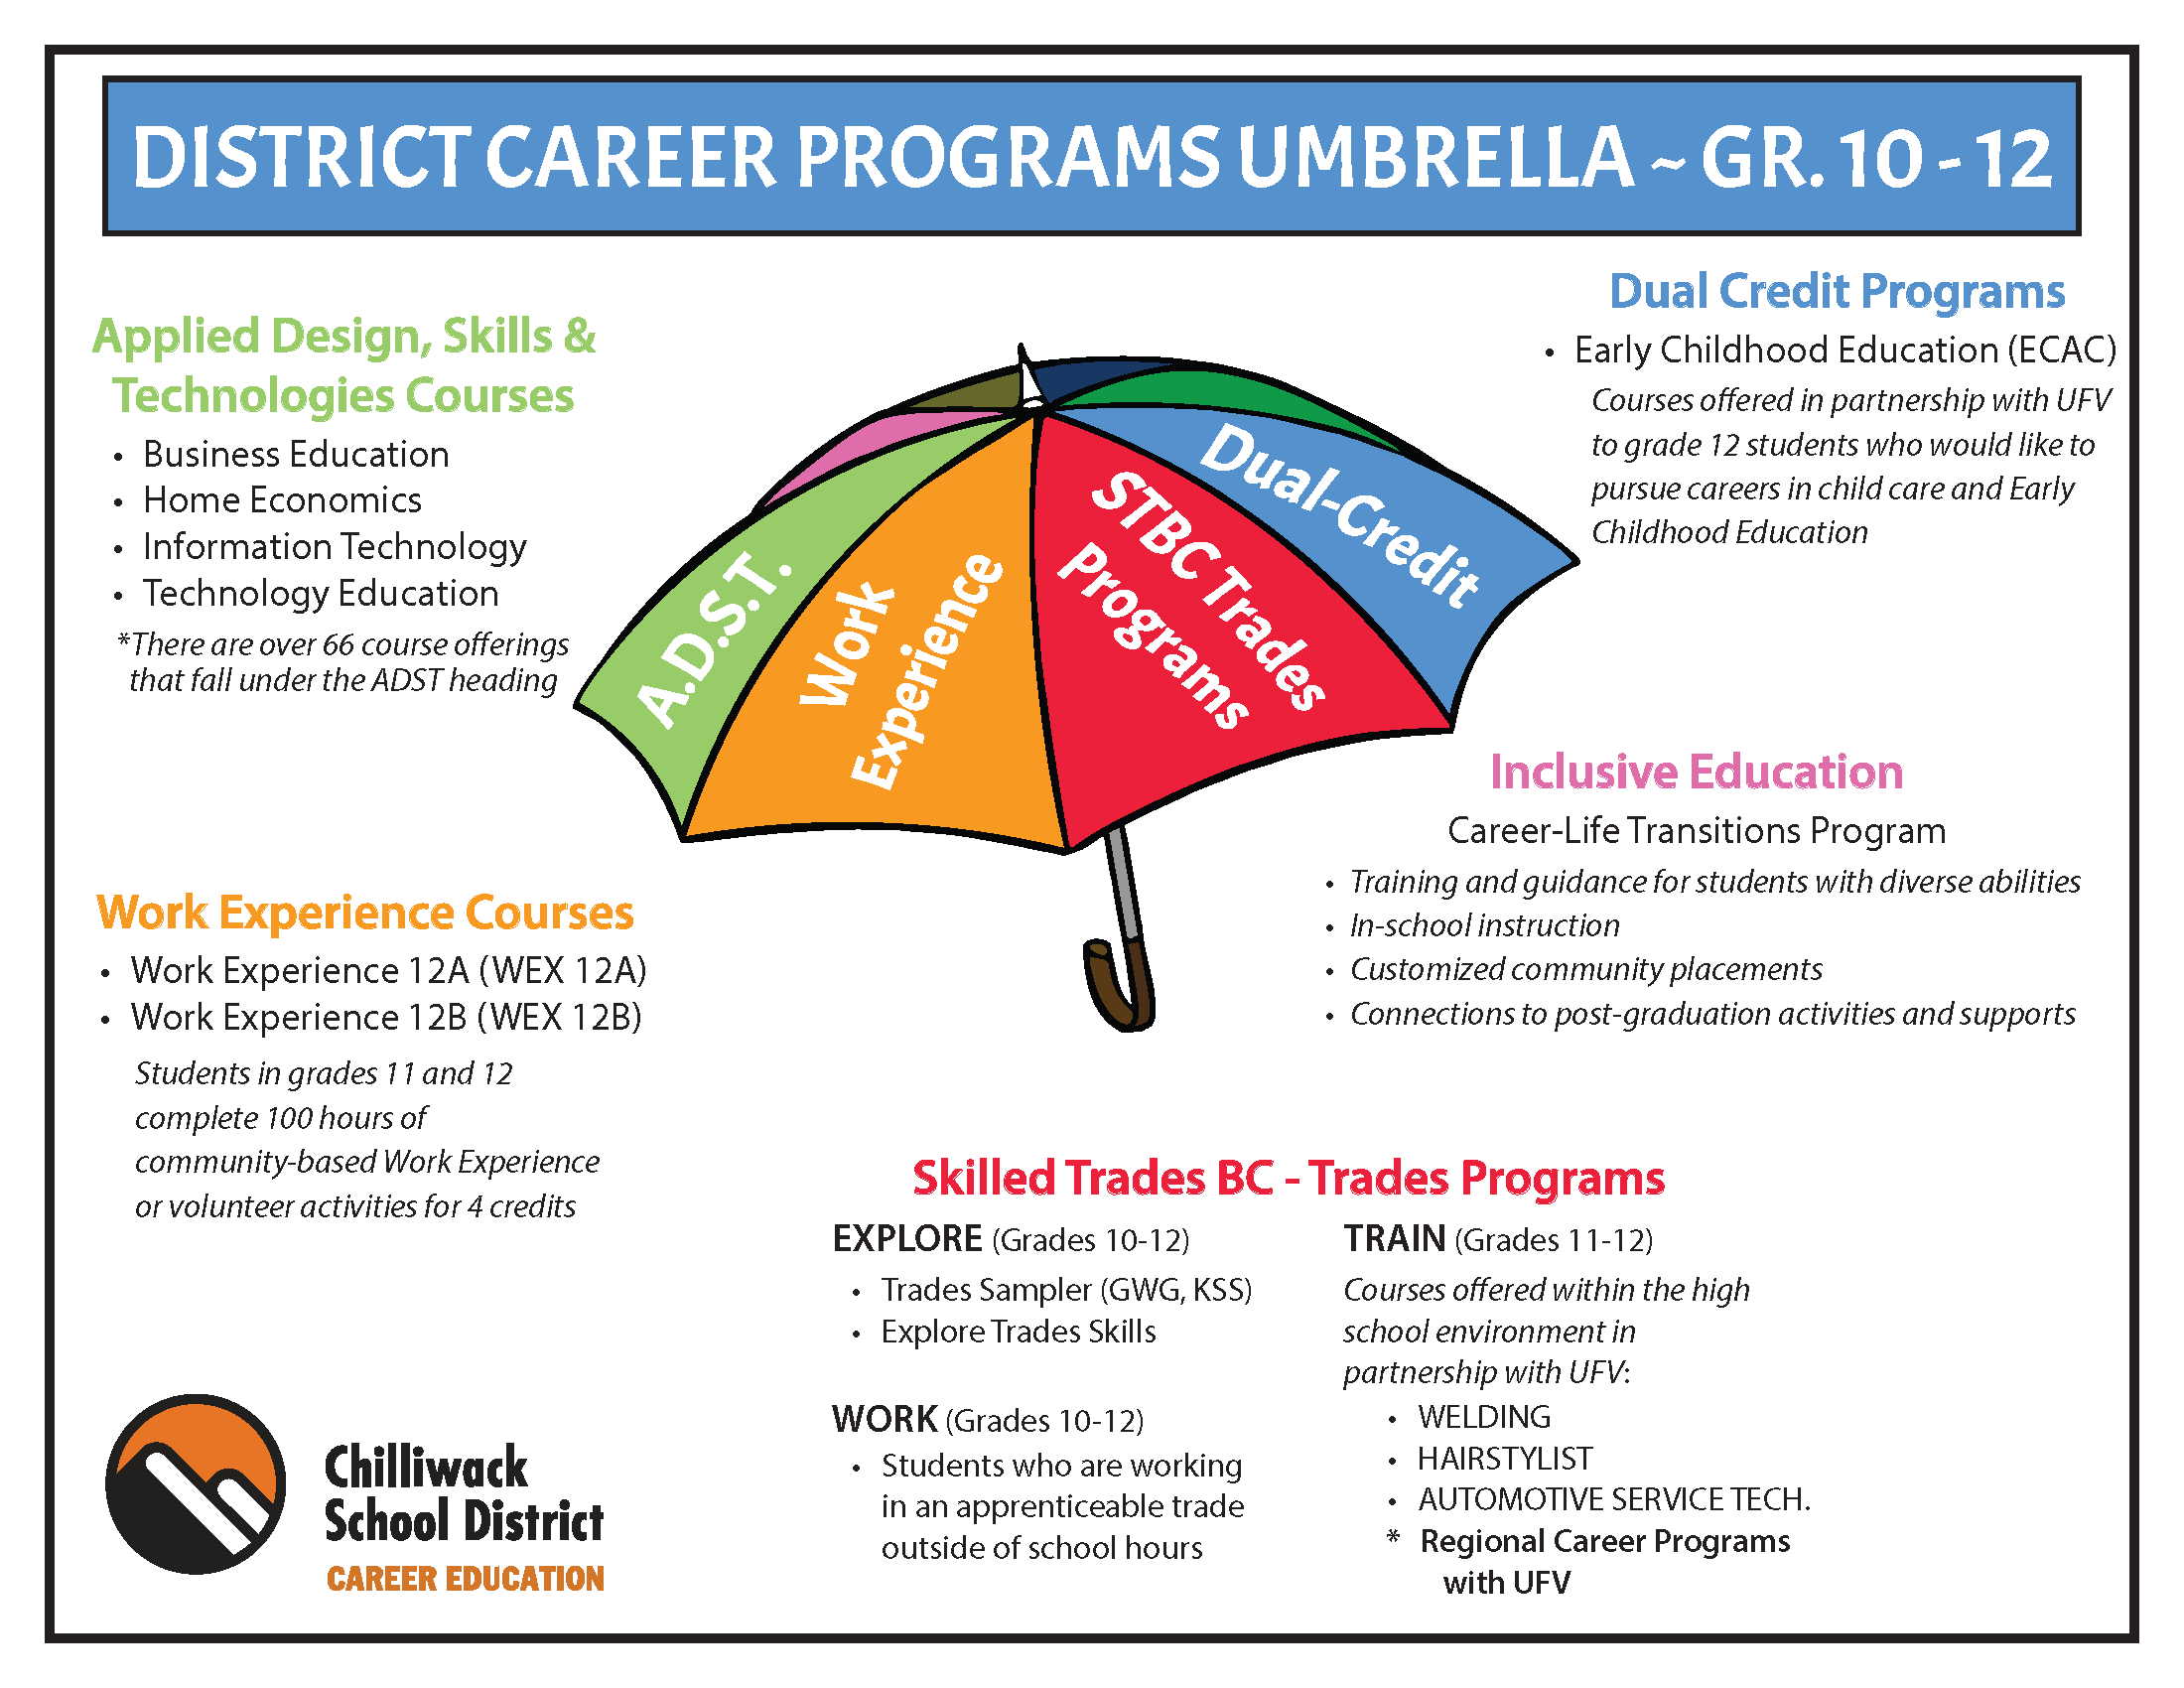 SD33 Career Programs Umbrella